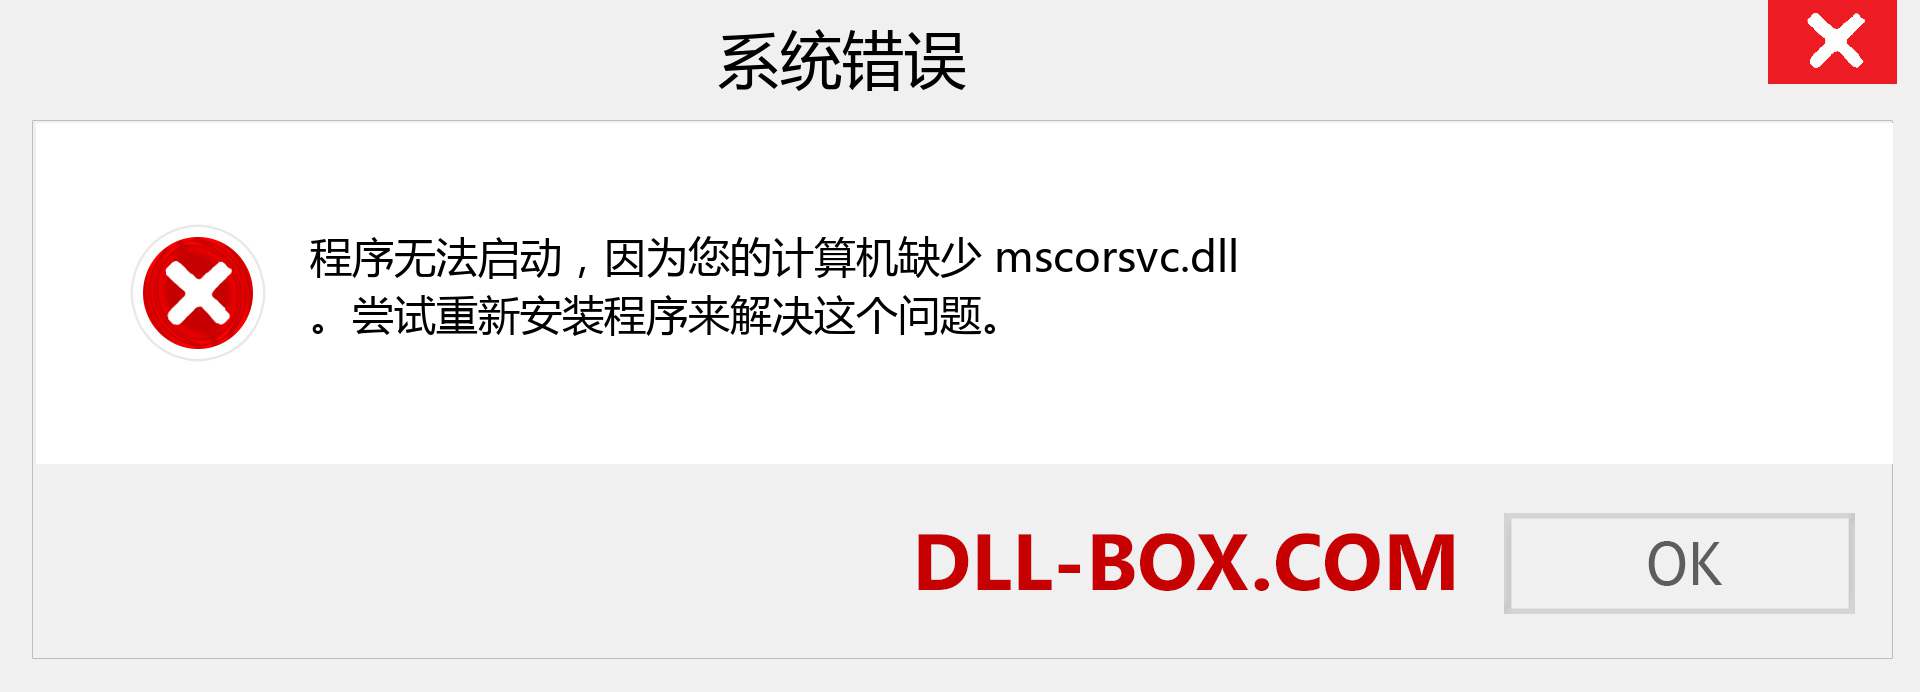 mscorsvc.dll 文件丢失？。 适用于 Windows 7、8、10 的下载 - 修复 Windows、照片、图像上的 mscorsvc dll 丢失错误